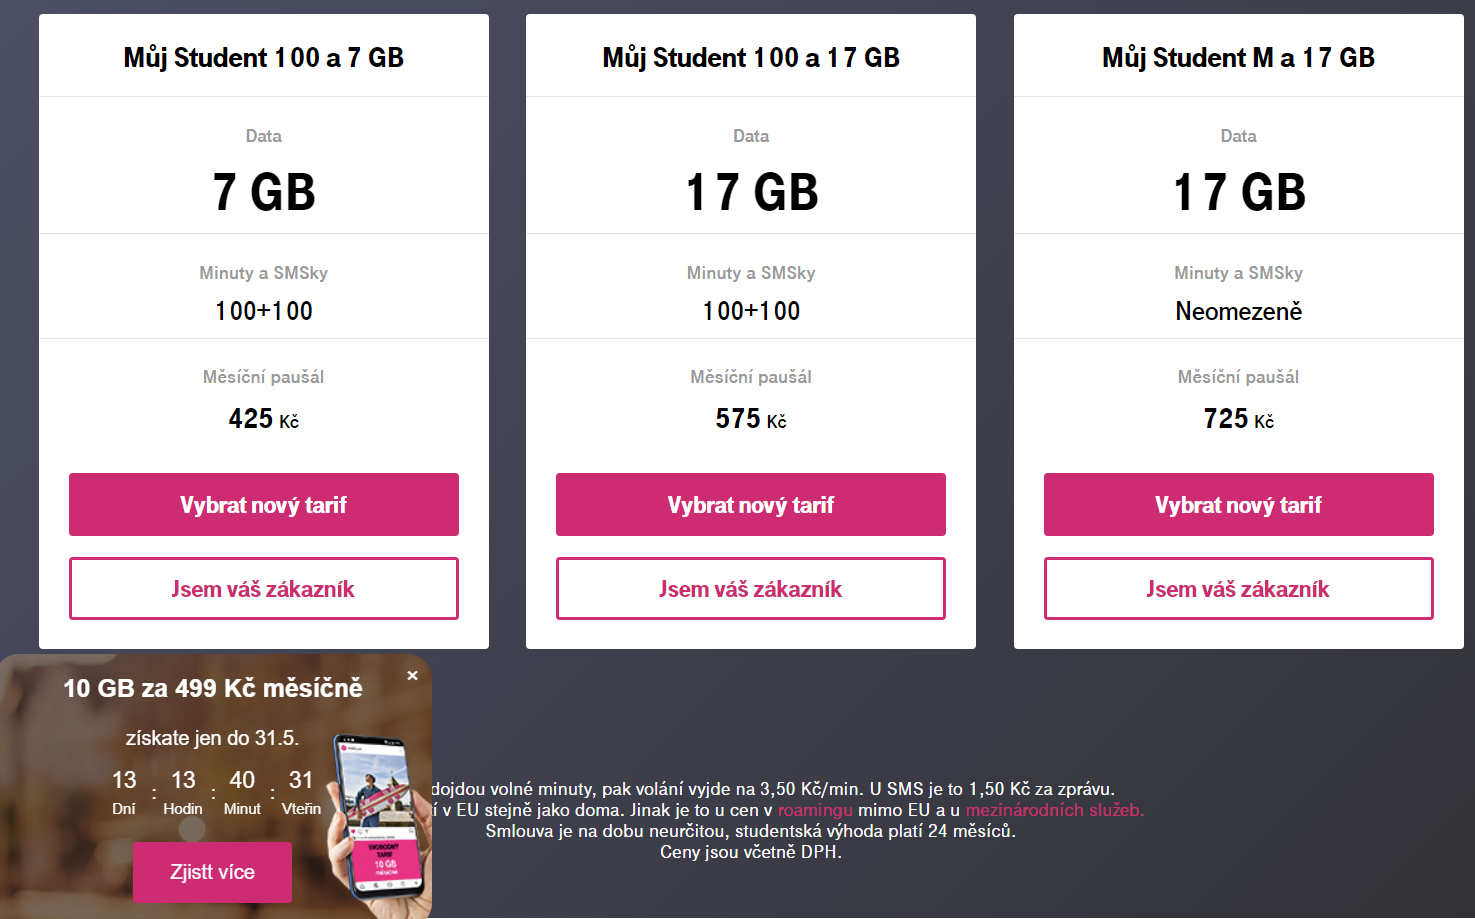 T-Mobile nastavuje nevýhodný tarif Mobil S za 650,- po ukončení studentského tarifu